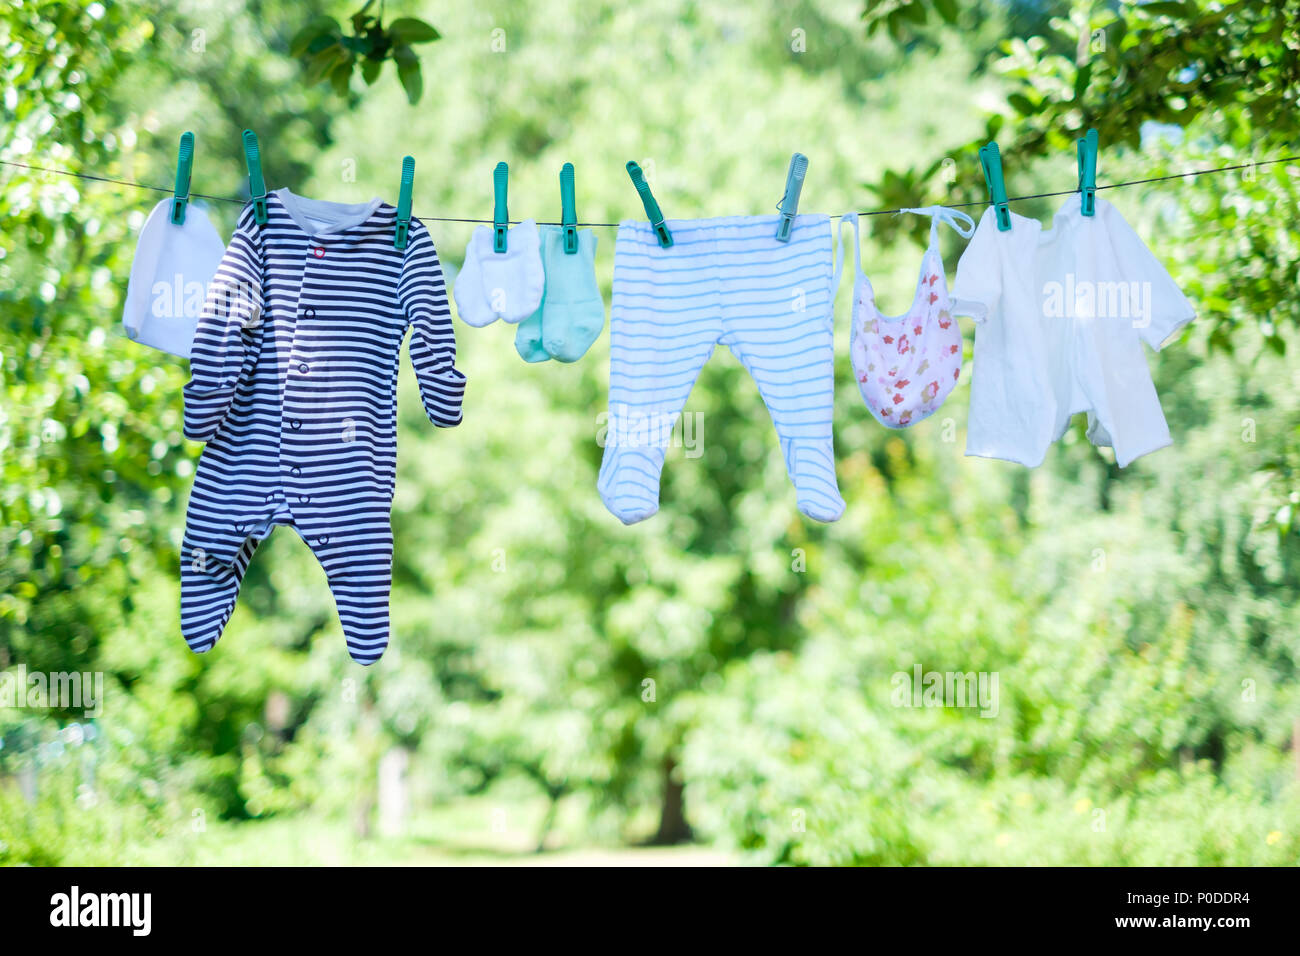 Ropa de bebé en tendedero en el jardín Foto de stock